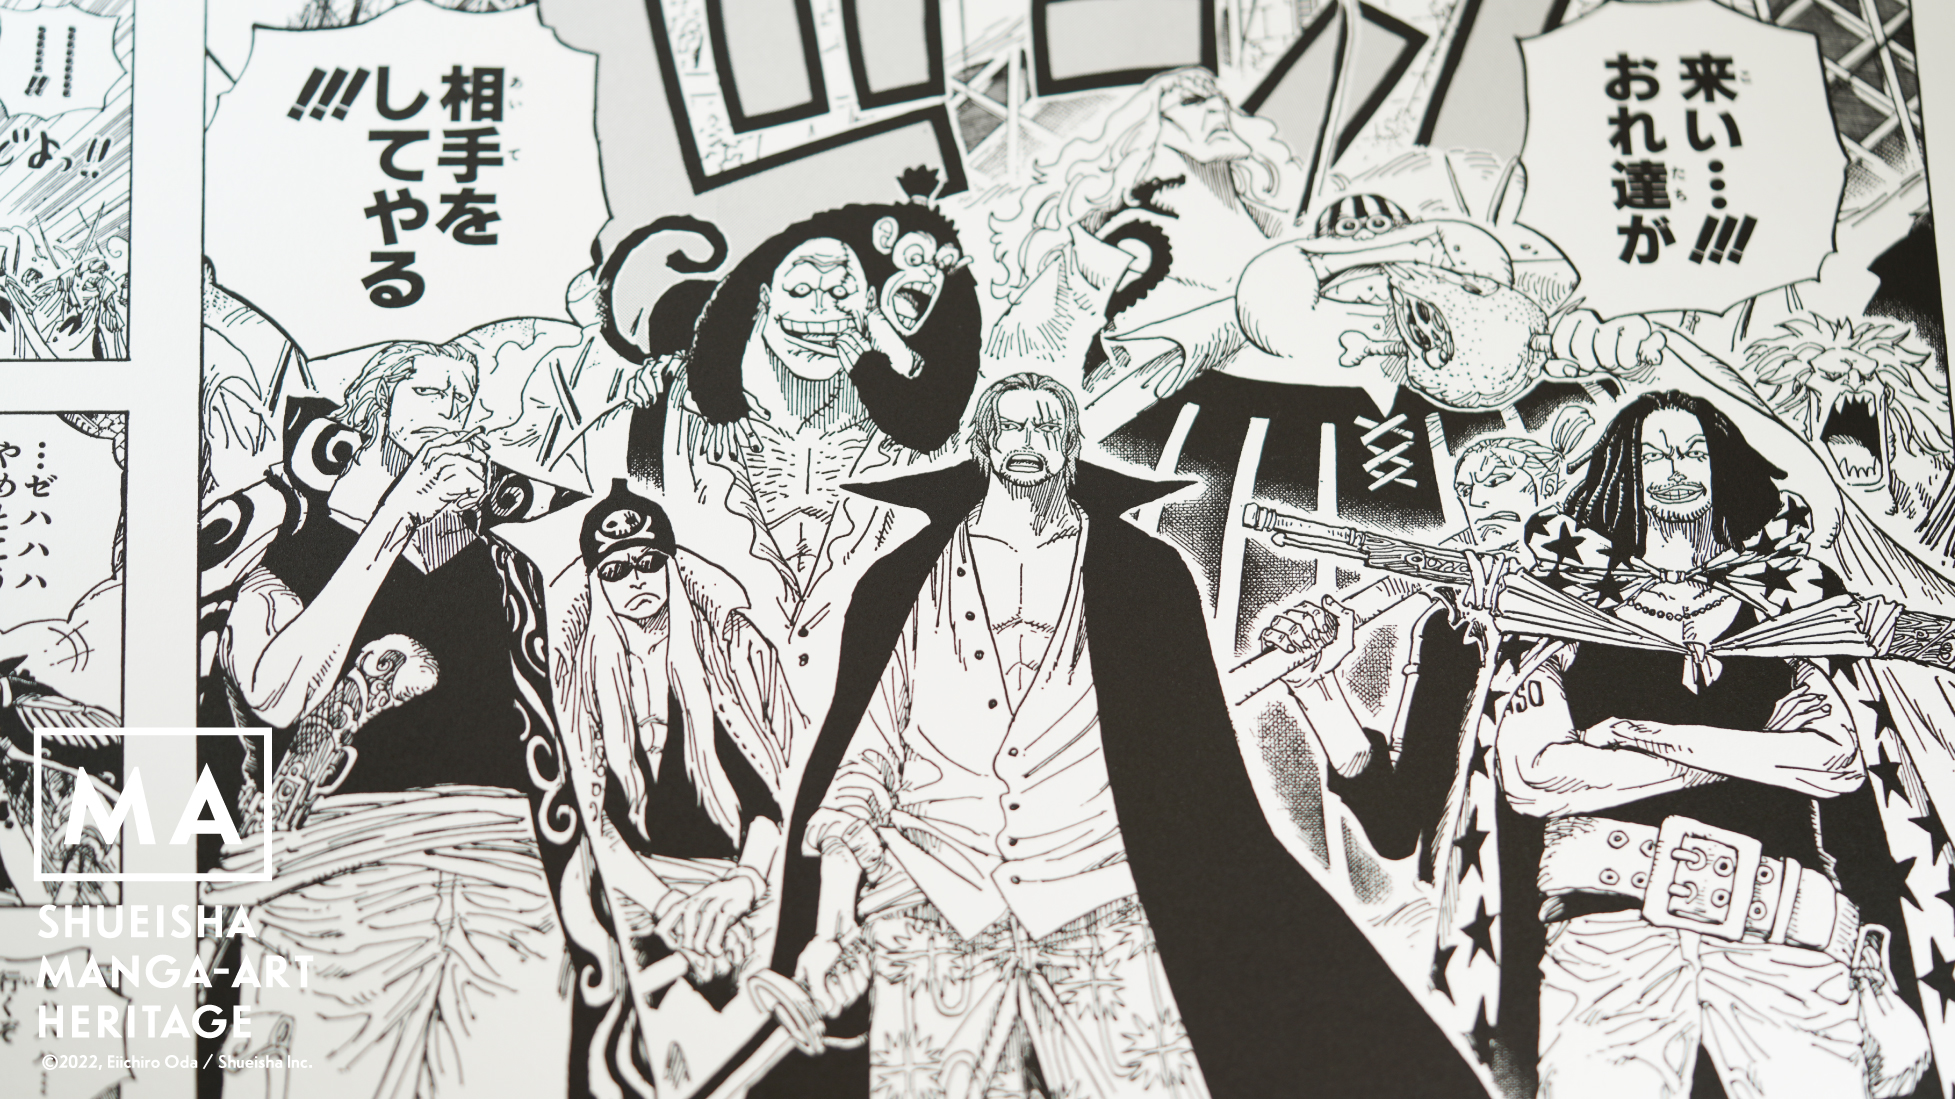 集英社マンガアートヘリテージ 尾田栄一郎 One Piece 赤髪海賊団 などの作品を販売開始 株式会社集英社のプレスリリース